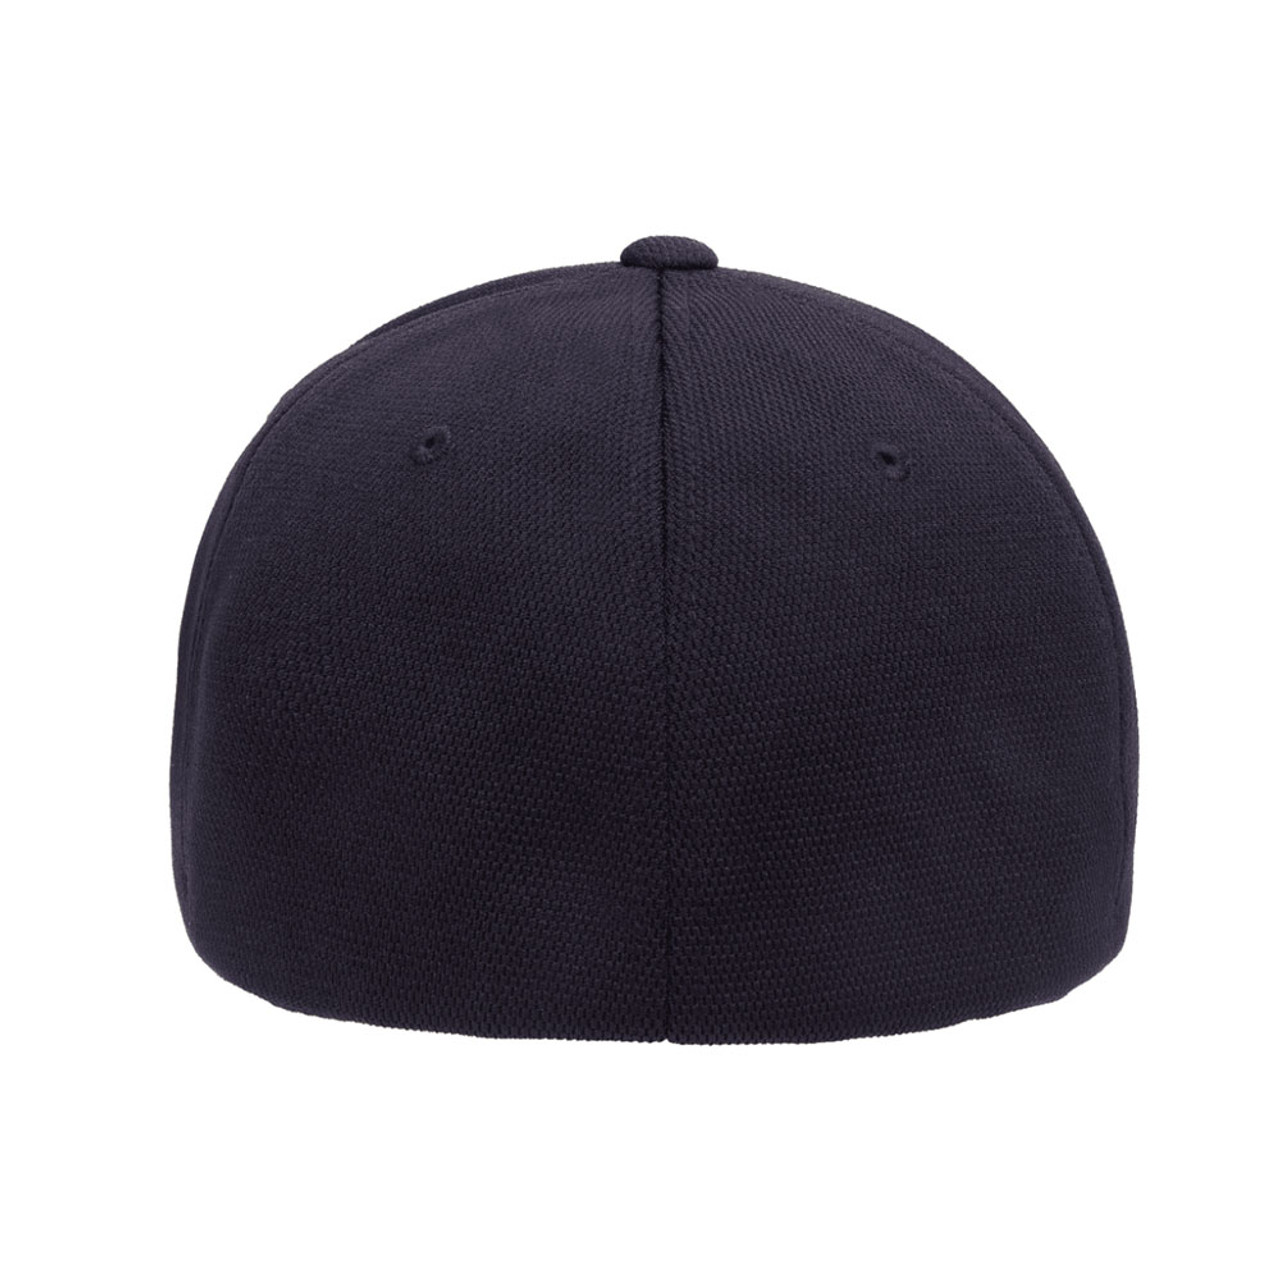 Performance - Cool | The & Hat One Flexfit Cap Jac Dozen Dry